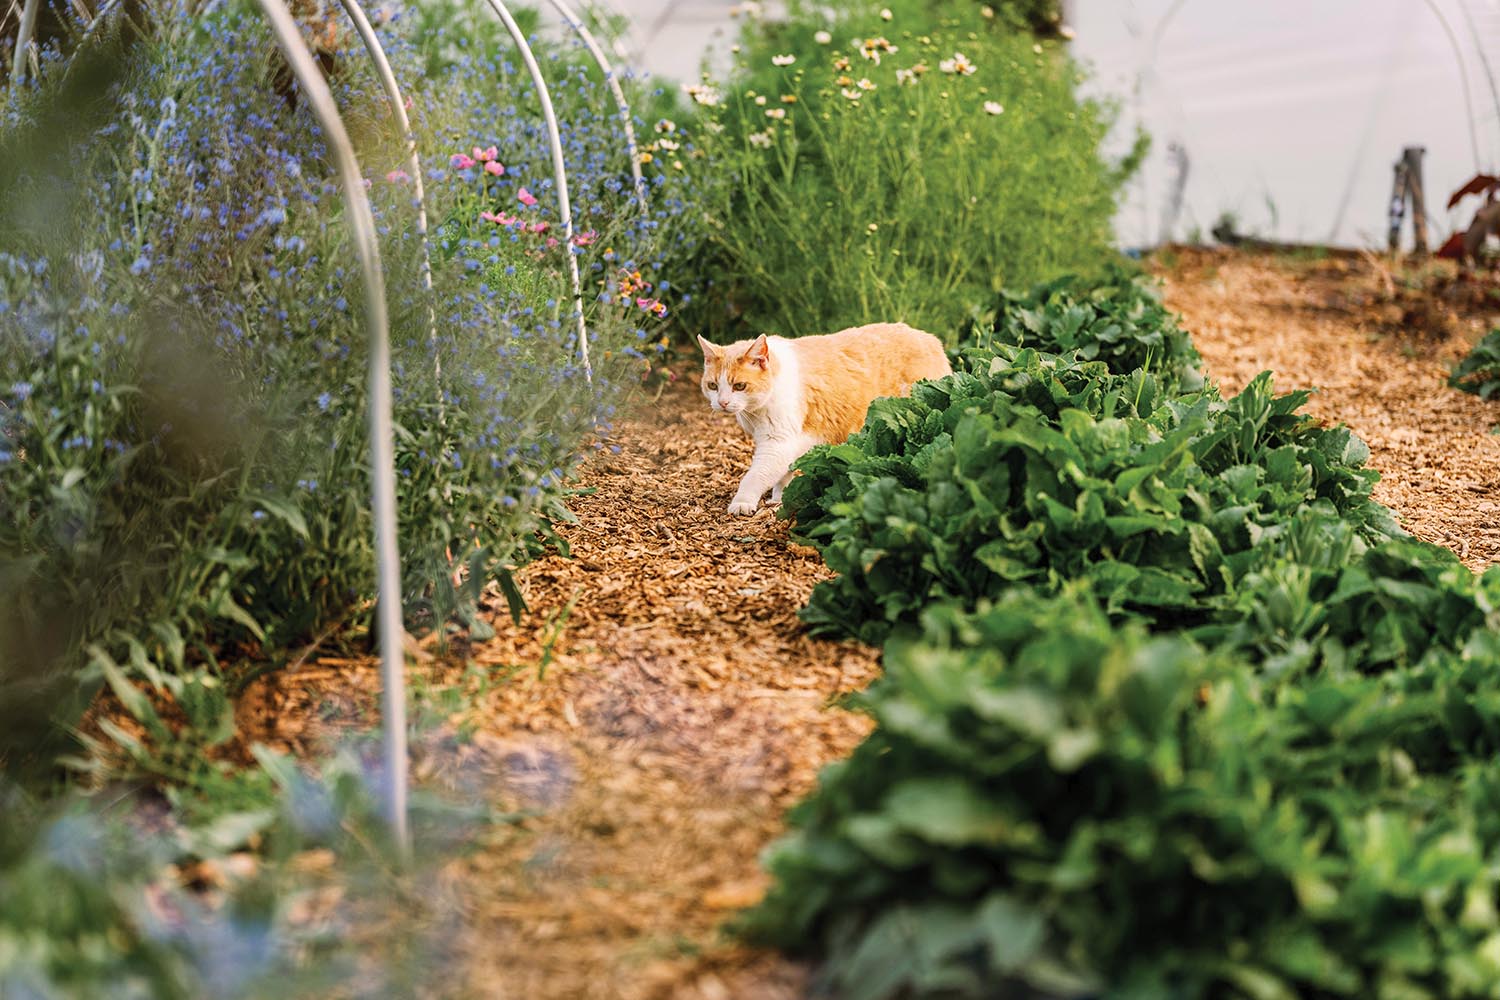 Orange cat walks through garden rows.